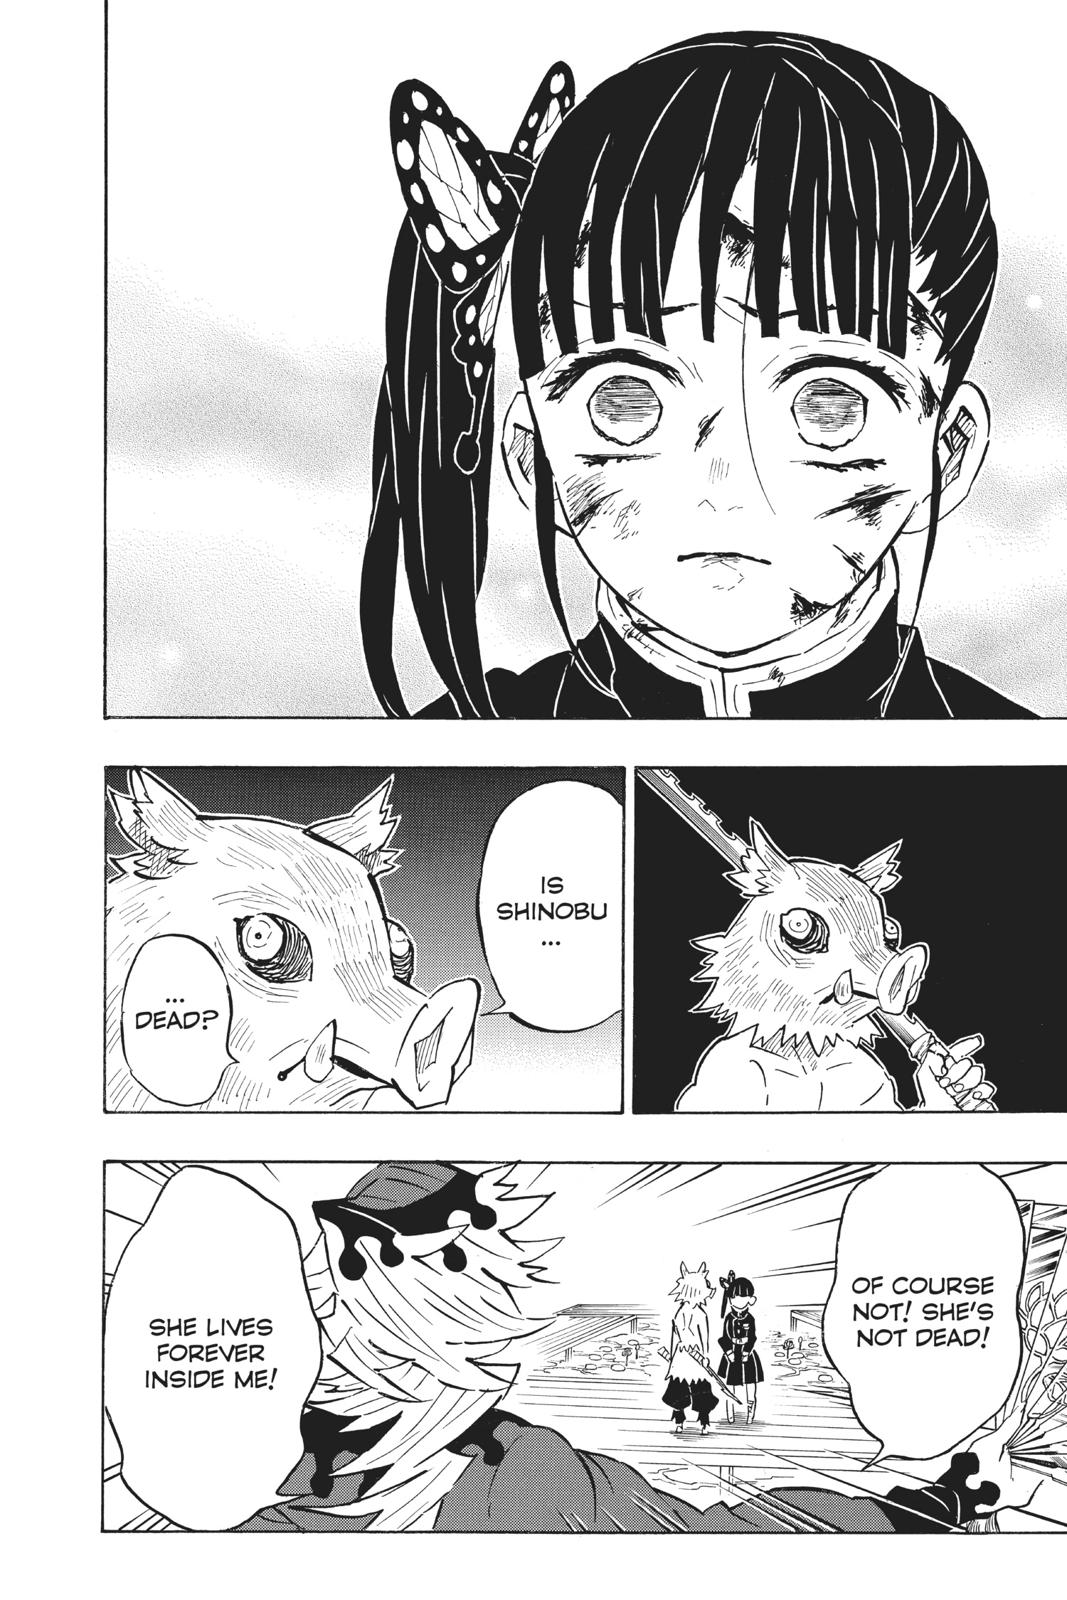 Demon Slayer Manga Manga Chapter - 159 - image 4